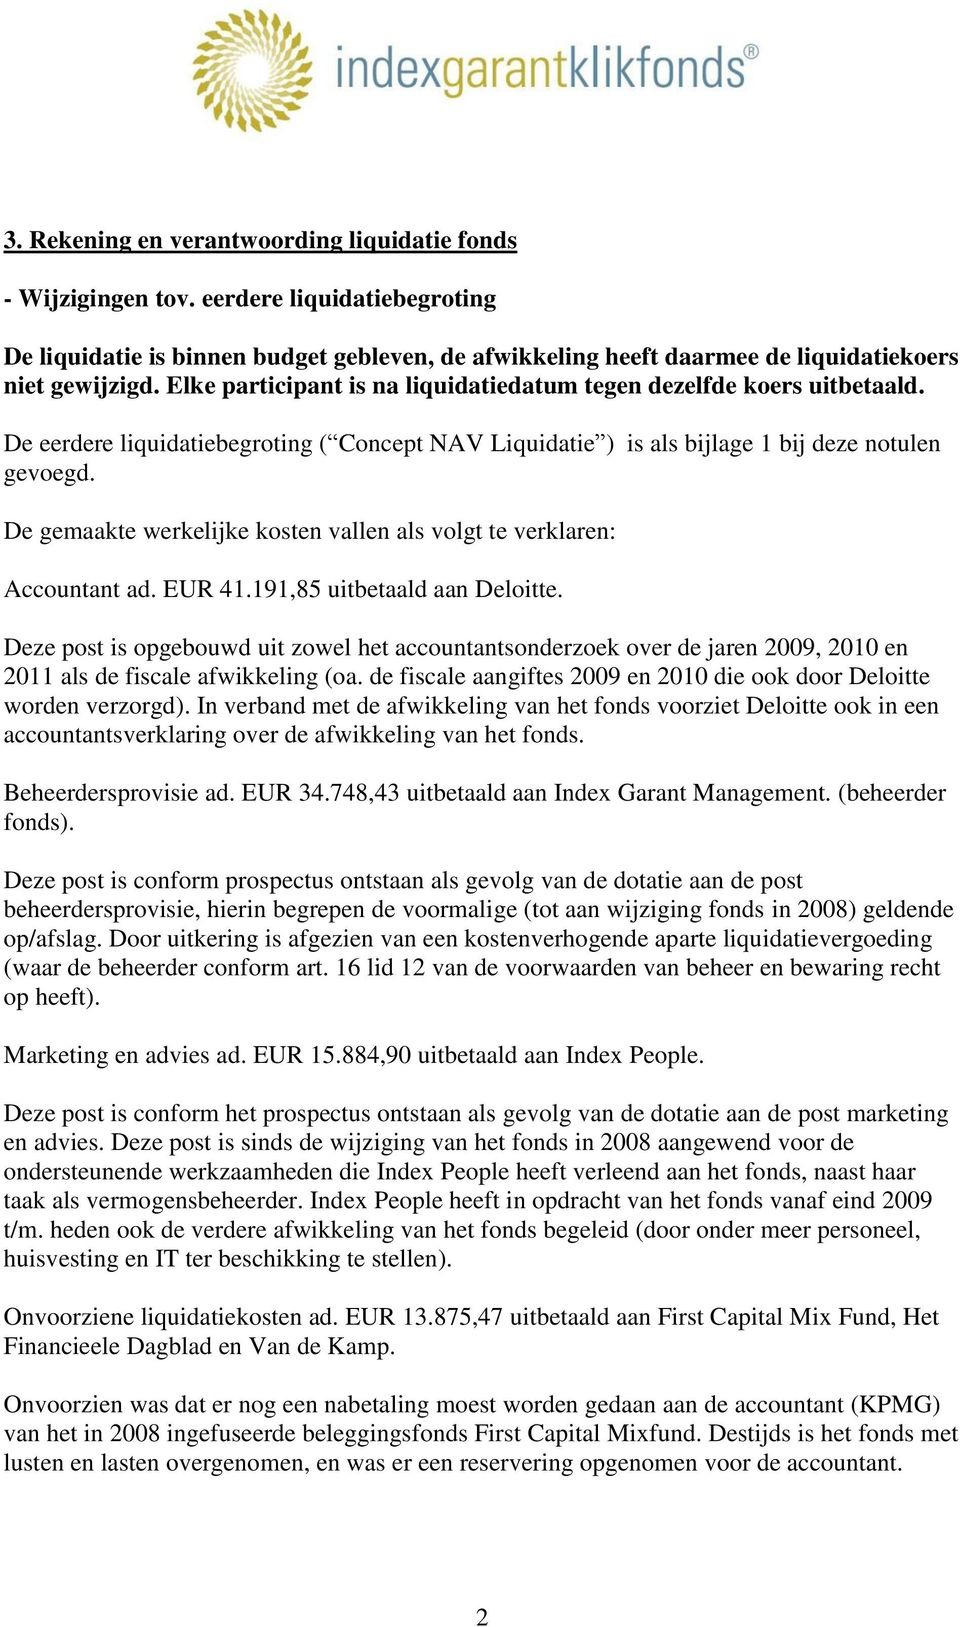 De gemaakte werkelijke kosten vallen als volgt te verklaren: Accountant ad. EUR 41.191,85 uitbetaald aan Deloitte.